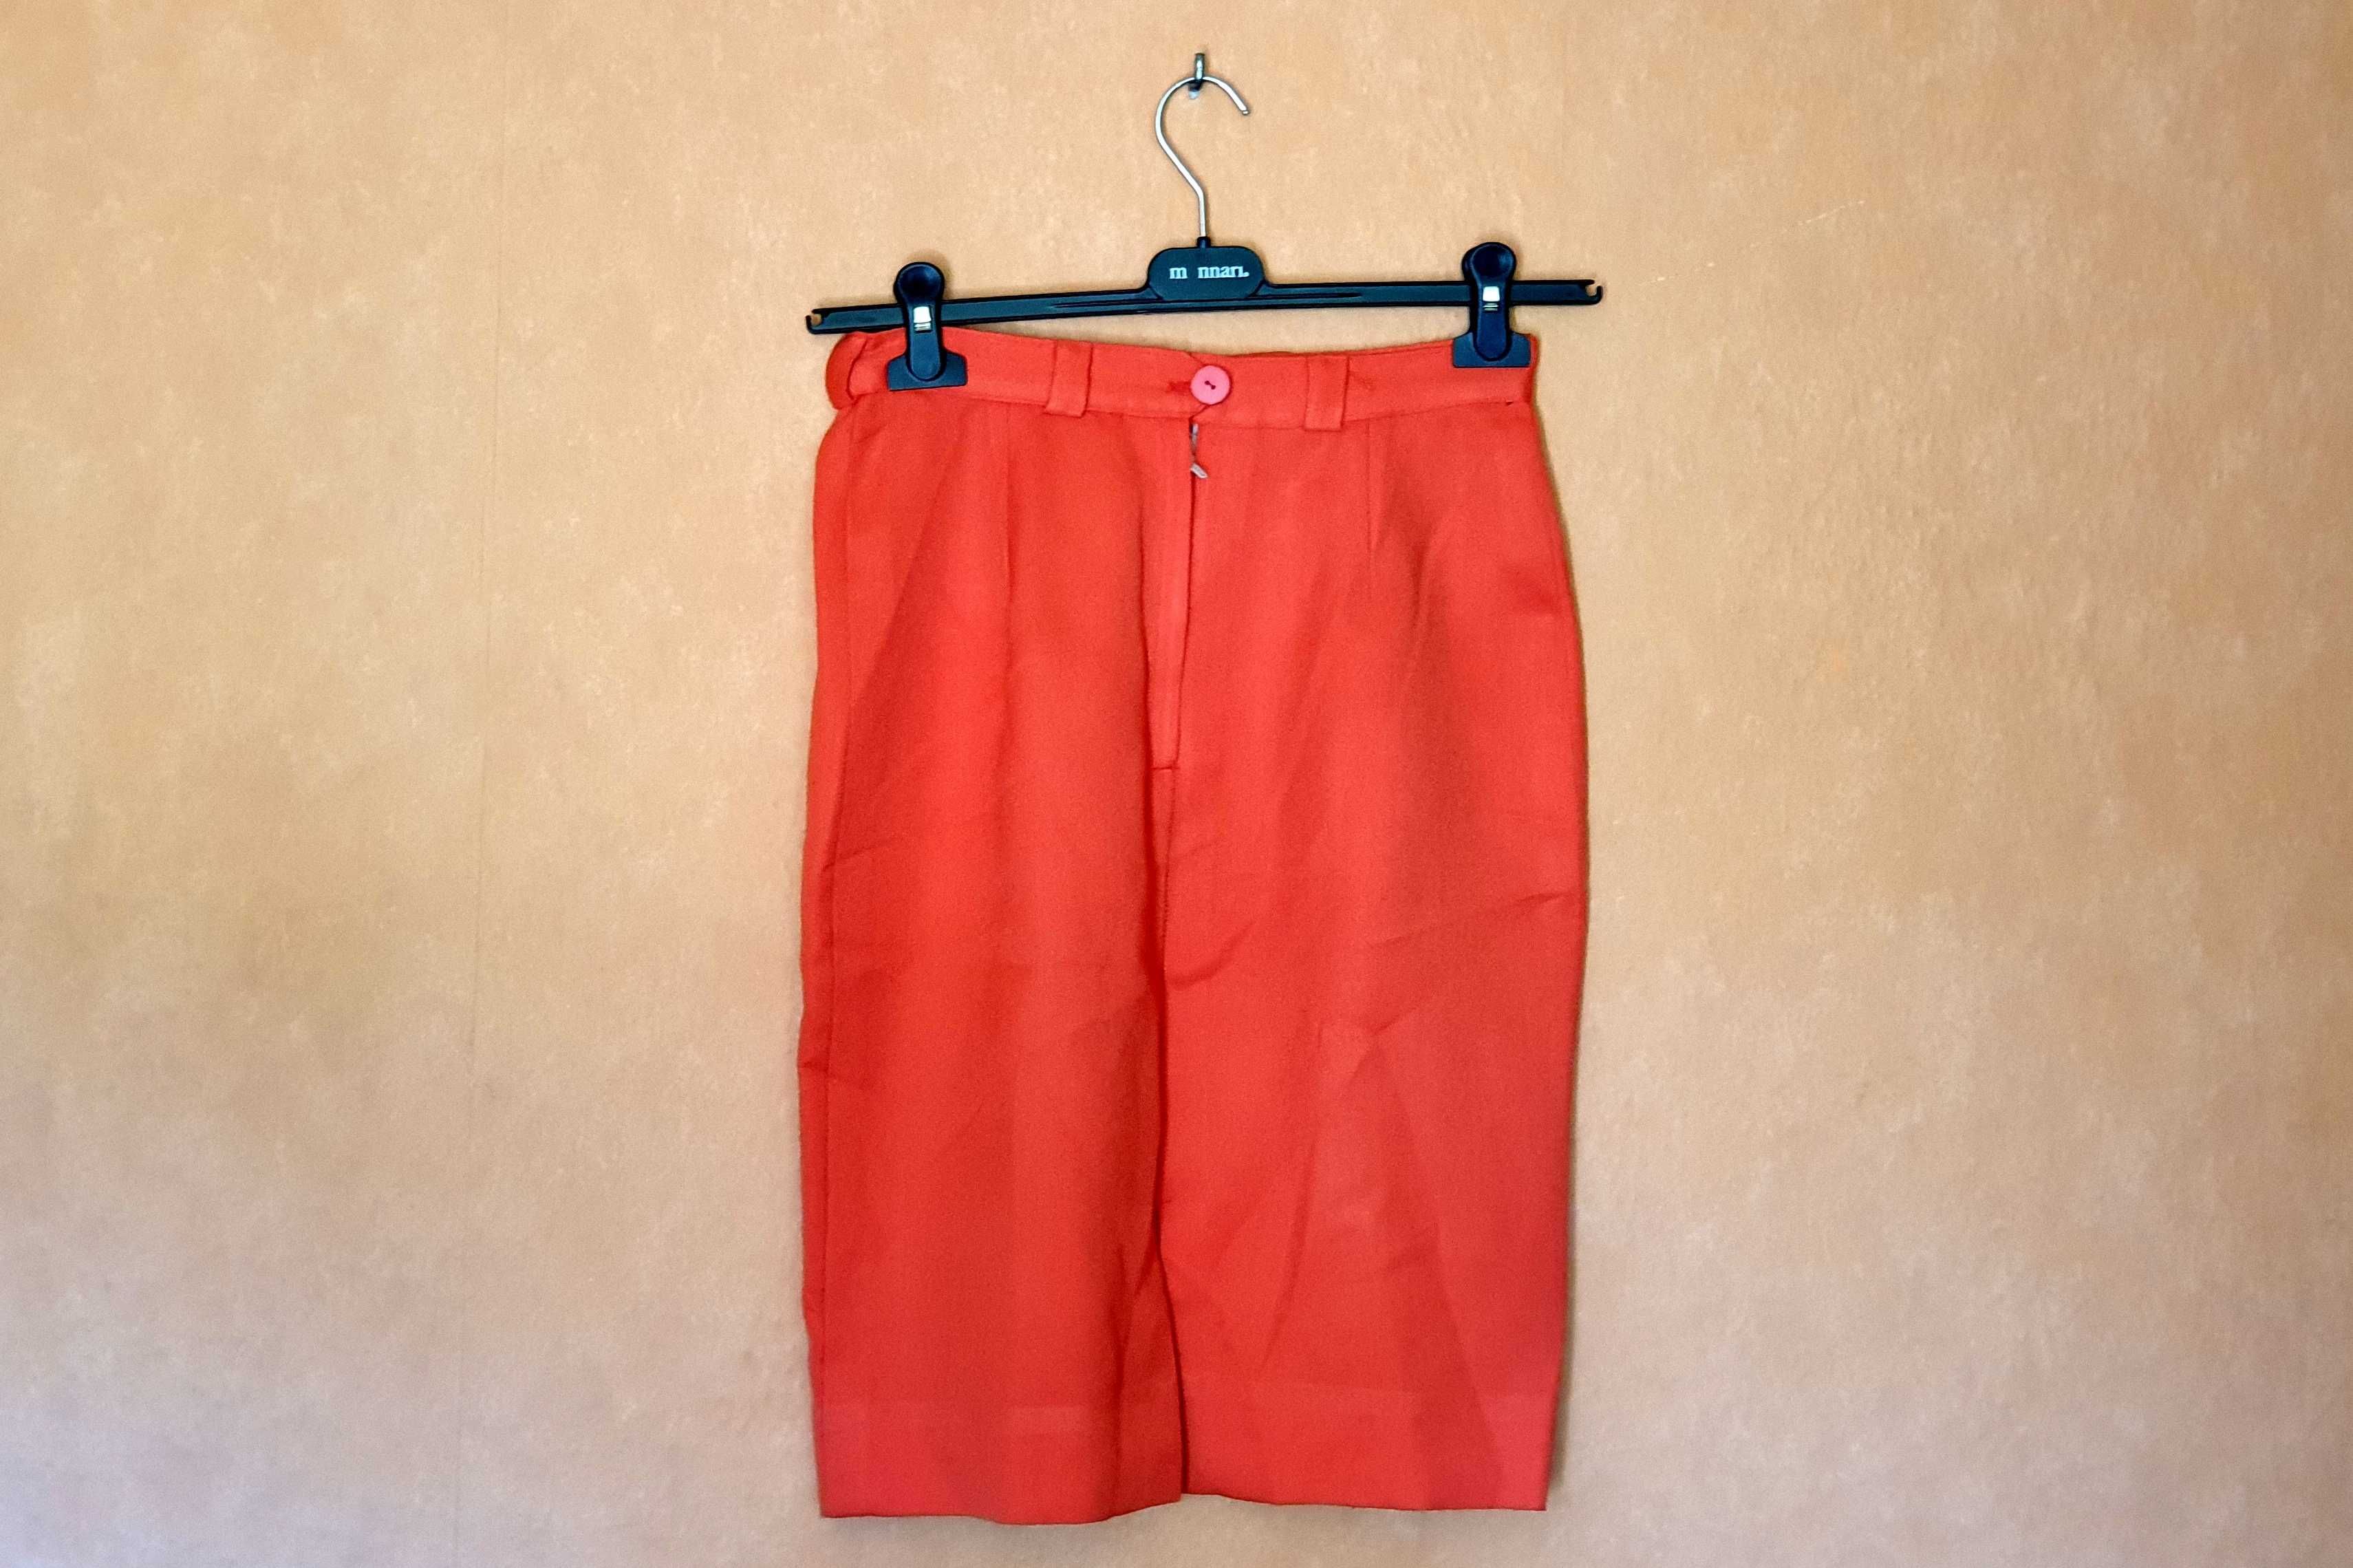 Spódnica pomarańczowa - rozmiar 69 cm - wzór 2